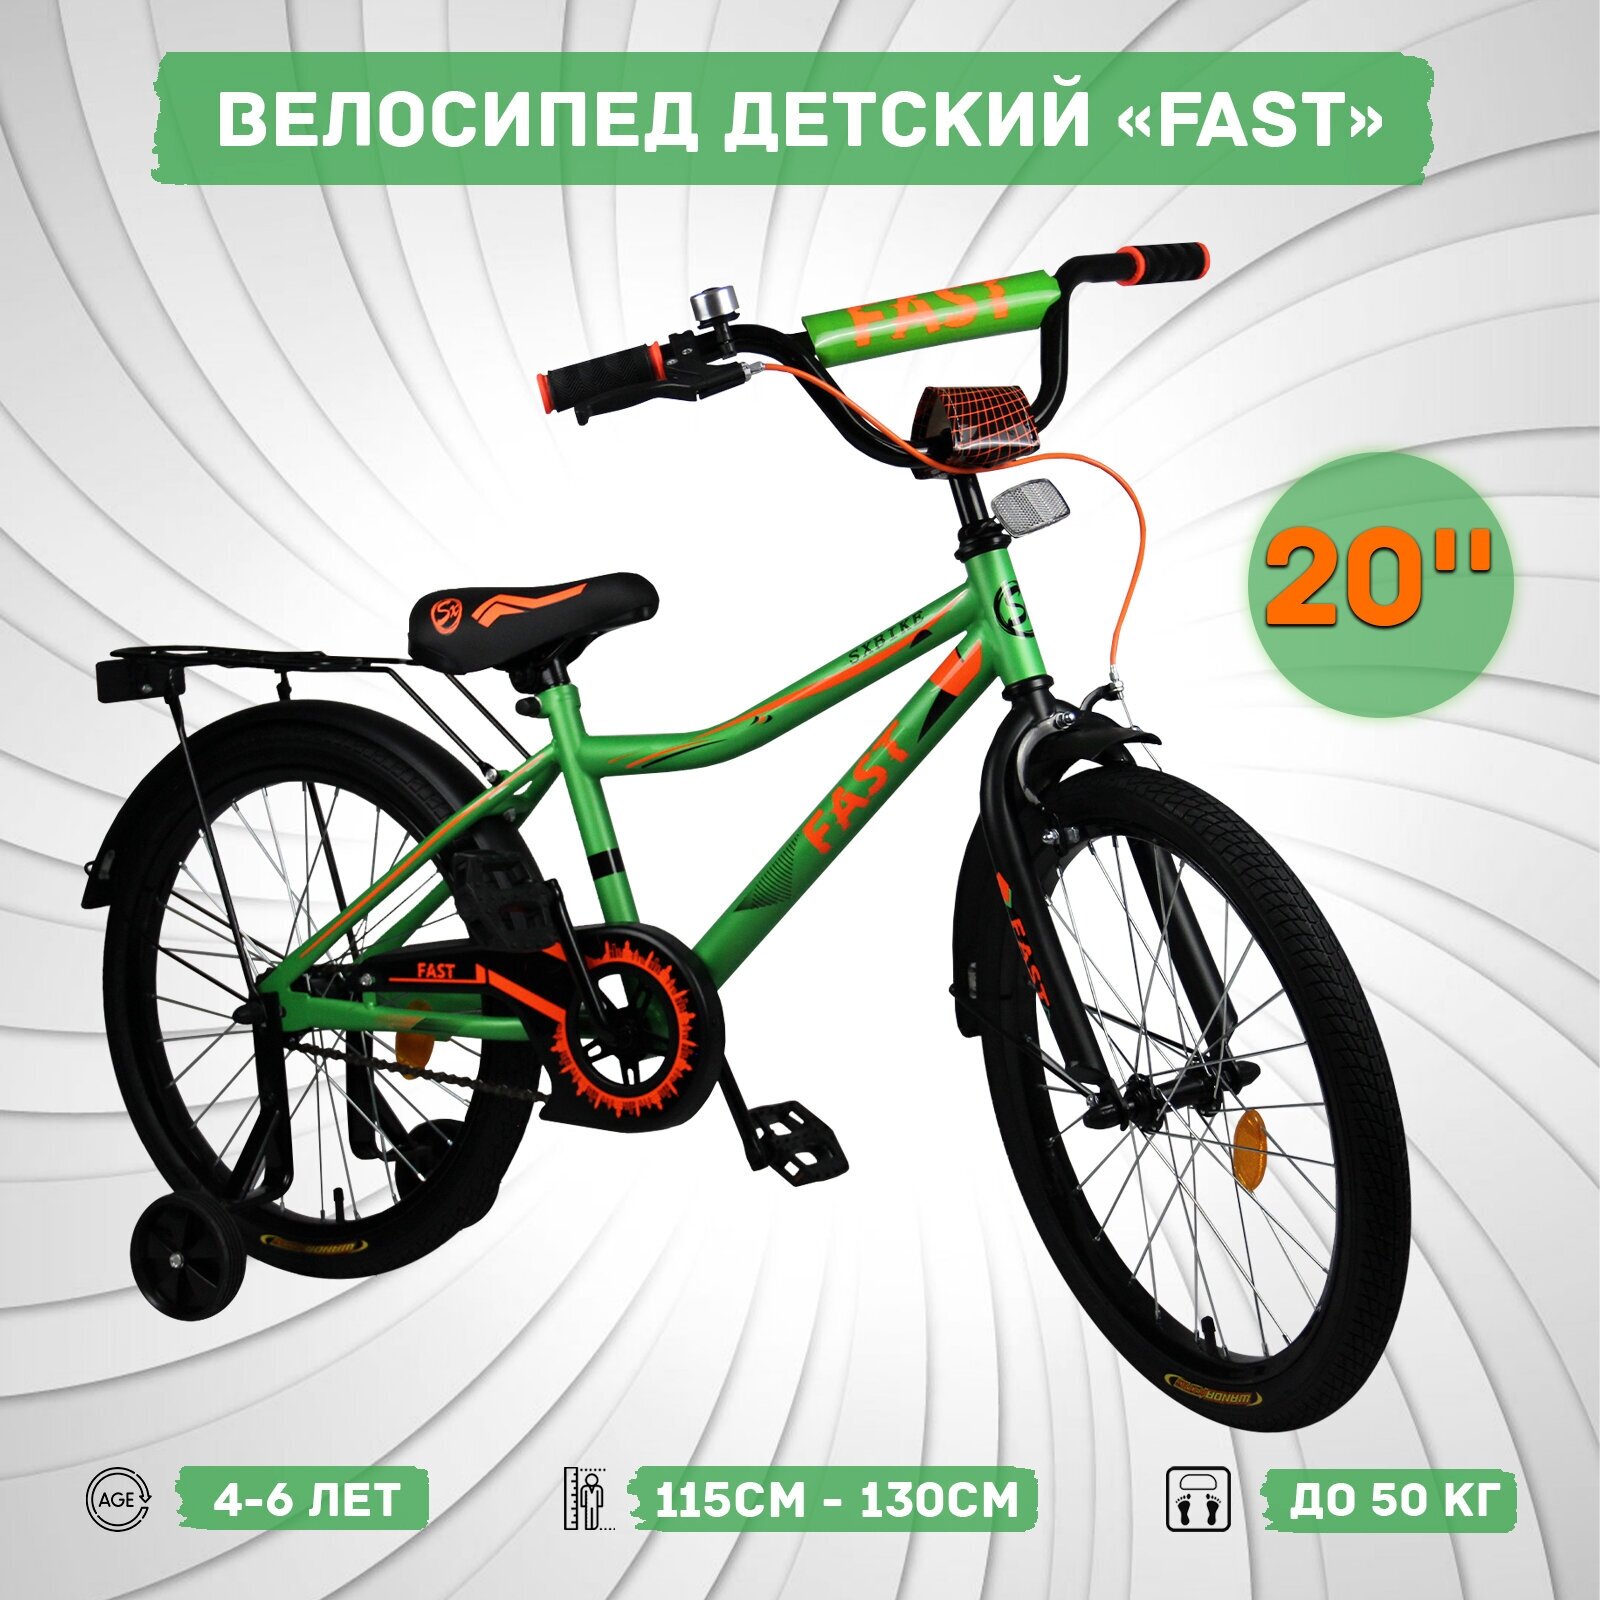 Велосипед детский Sx Bike Fast 20", оранжево-зеленый